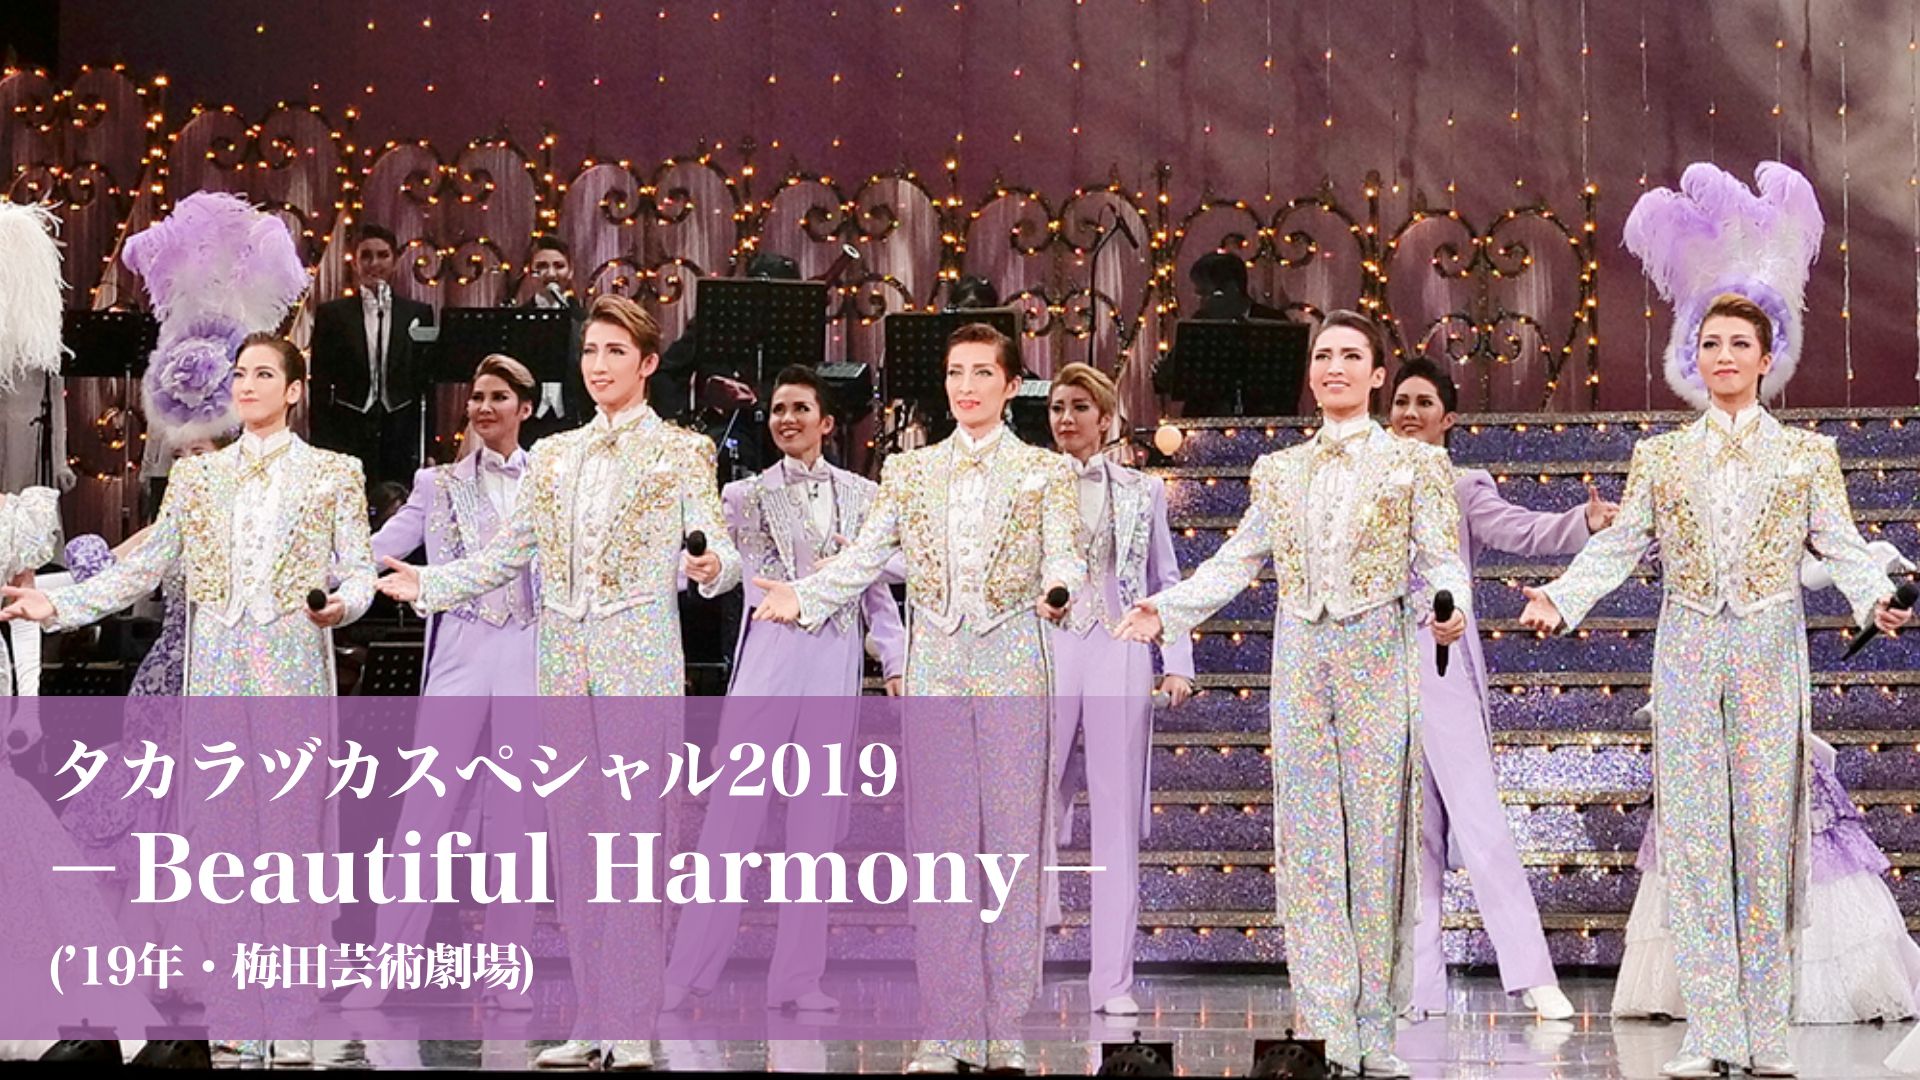 タカラヅカスペシャル2019-Beautiful Harmony-(’19年・梅田芸術劇場)